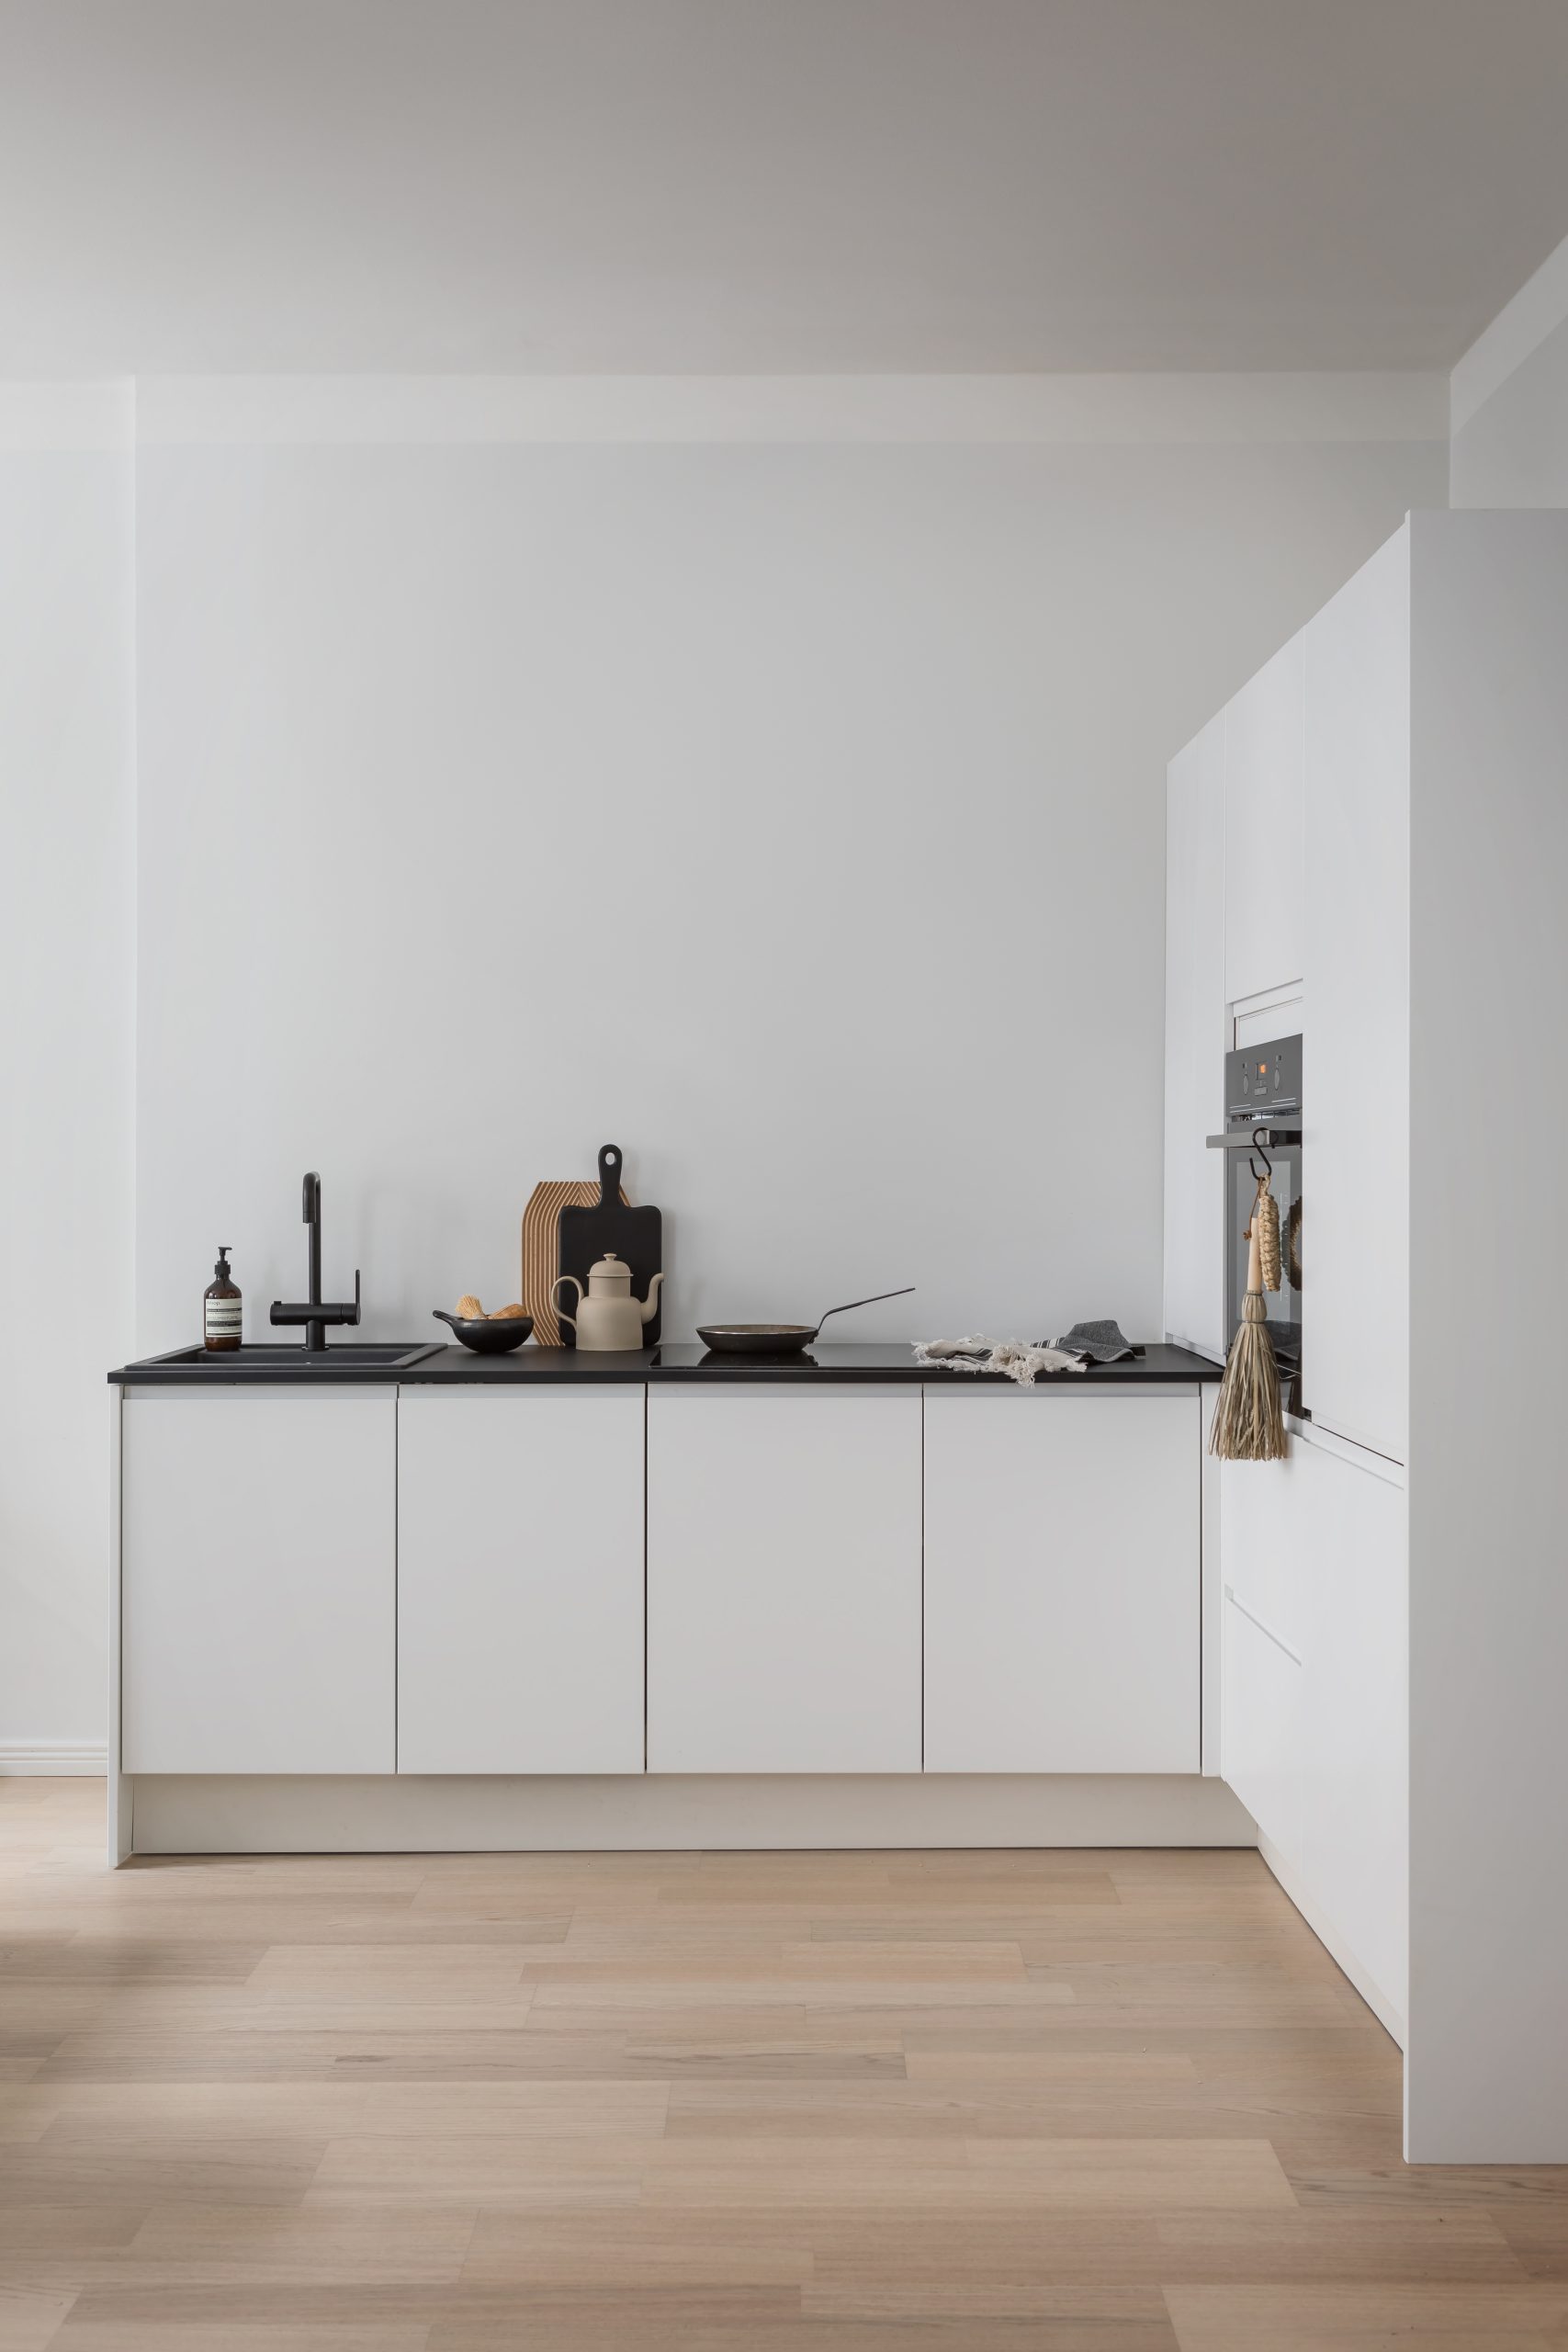 Blau minimalistinen valkoinen keittiö mustilla tasoilla ja hanalla